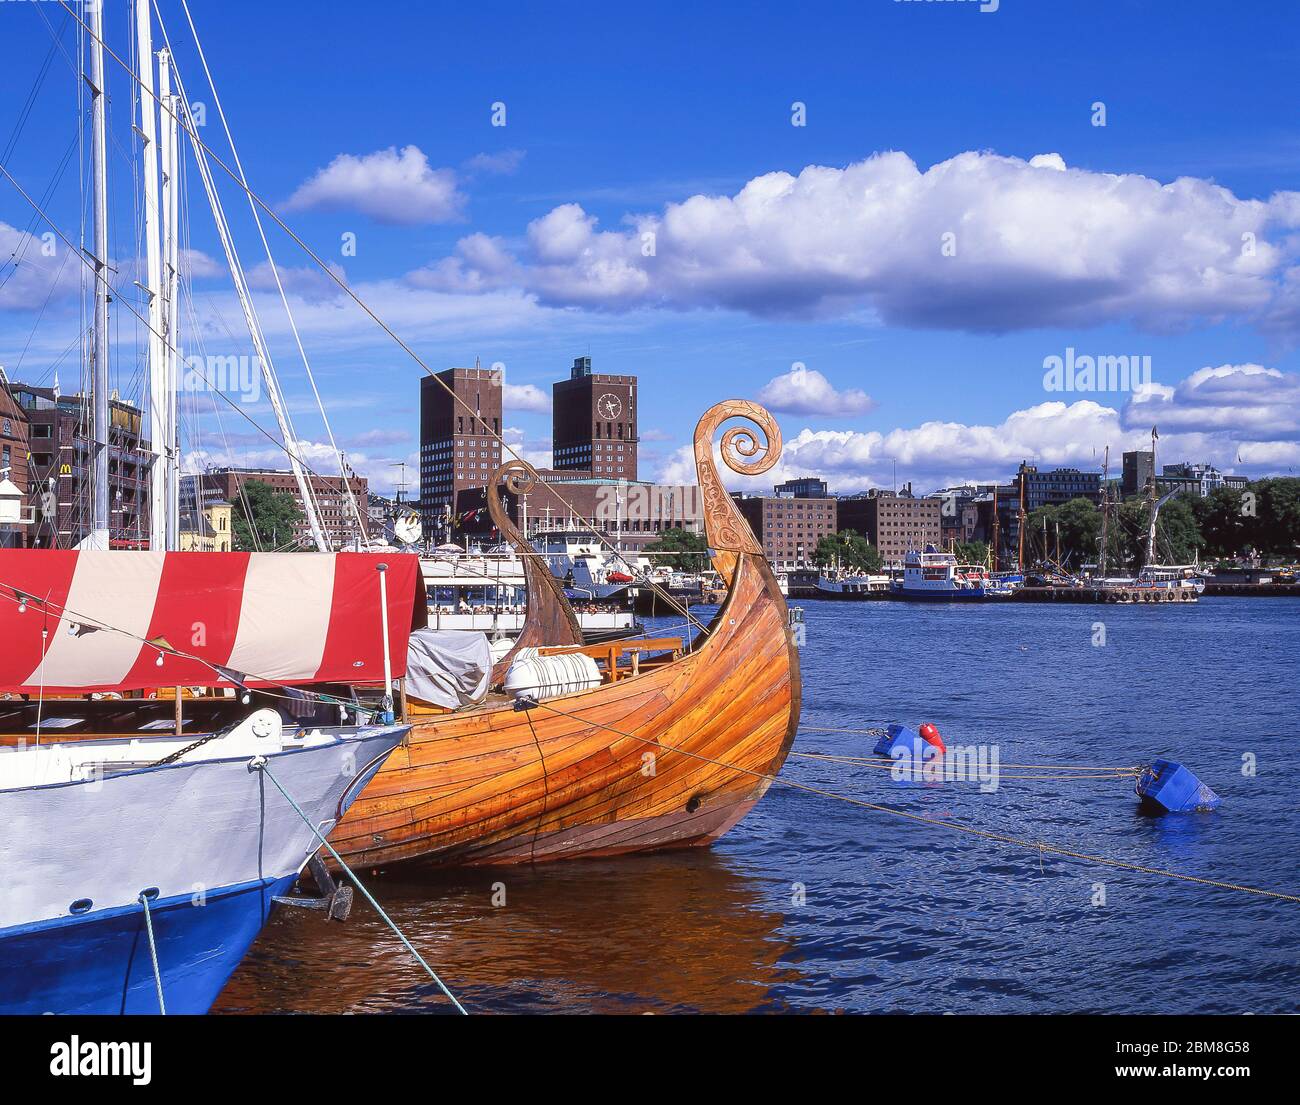 Hôtel de ville et réplique du navire viking, port d'Oslo, Oslo, Royaume de Norvège Banque D'Images